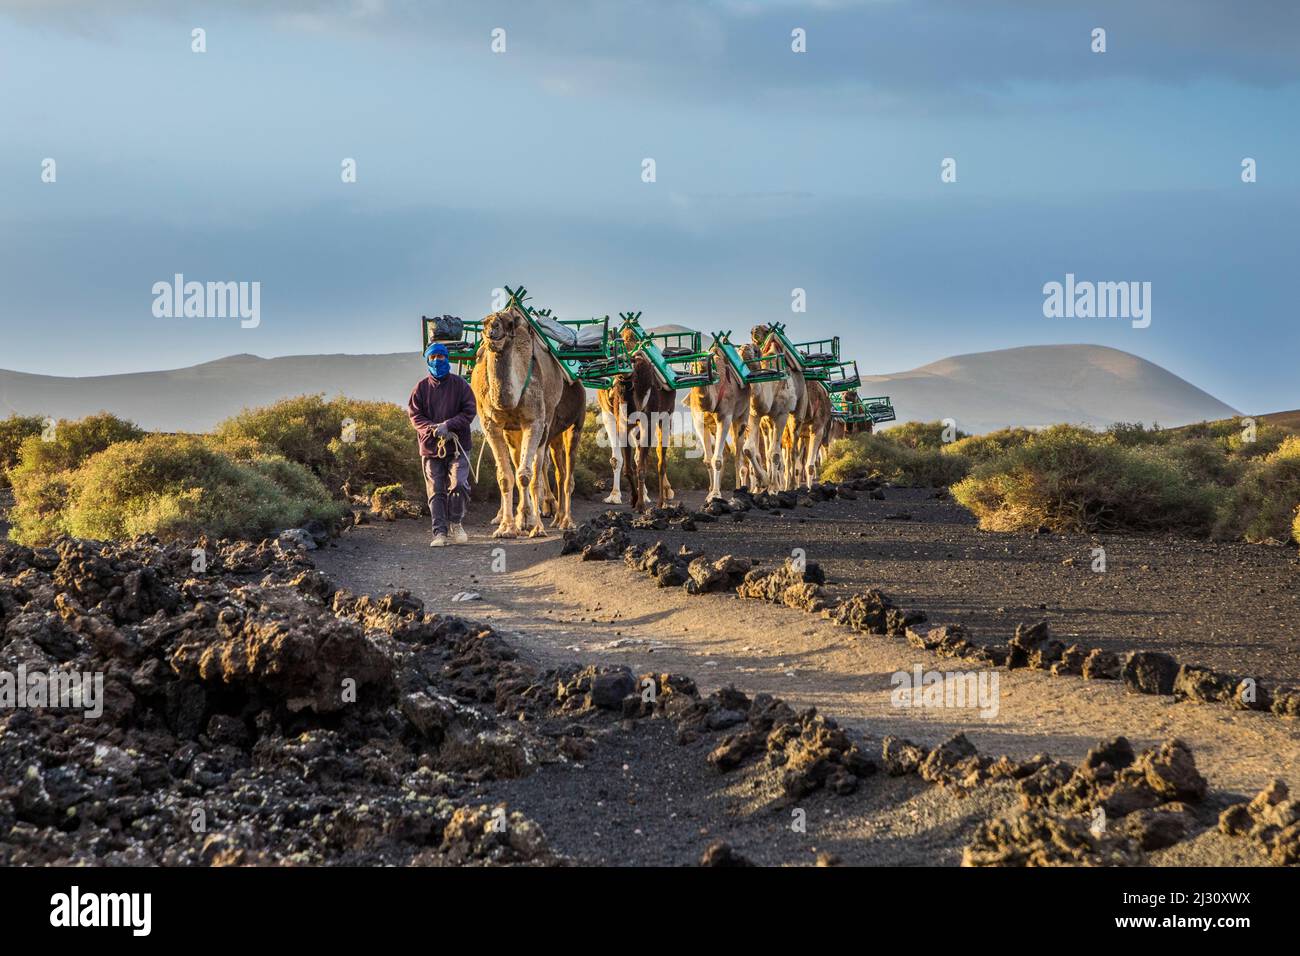 YAIZA, SPAGNA - MAR 14, 2017: L'autista del cammello guida la carovana del cammello attraverso l'area vulcanica del parco nazionale di timanfaya a Lanzarote. Foto Stock